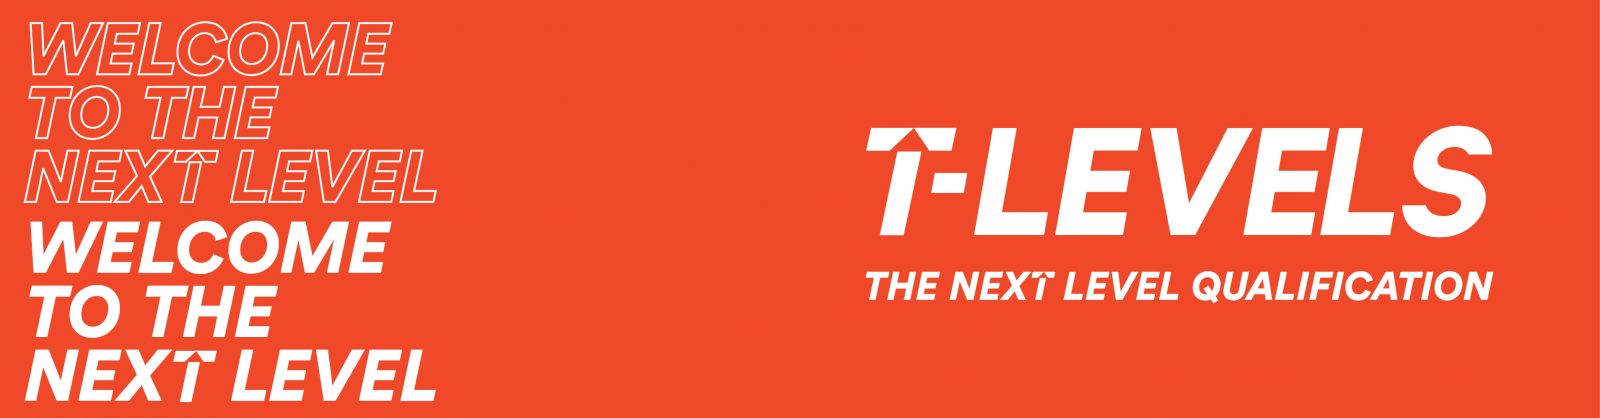 T Levels Logo